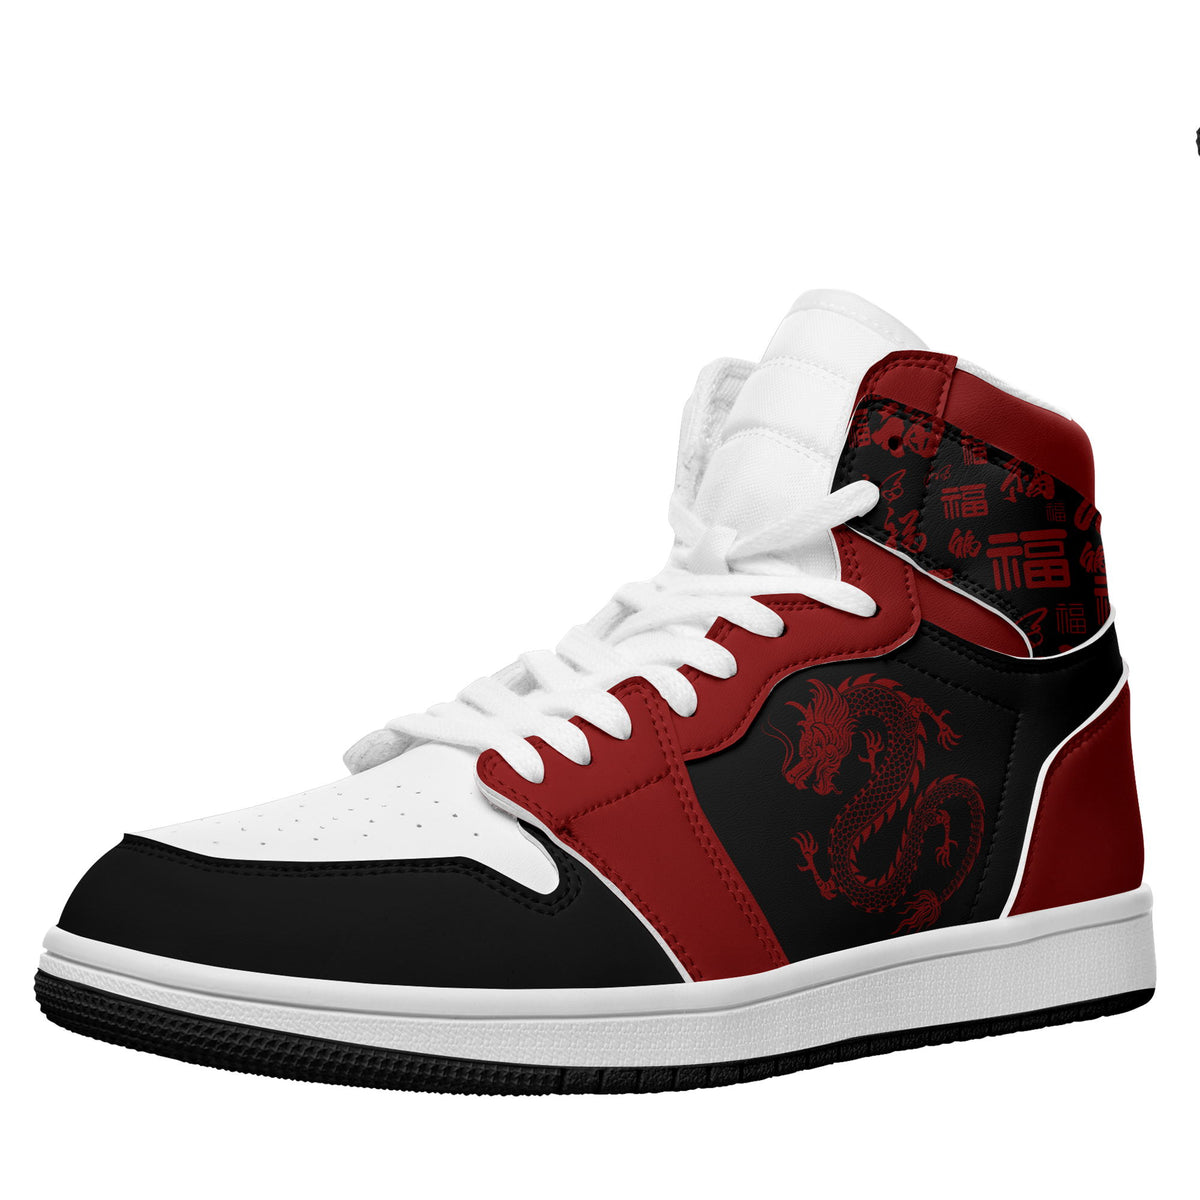 个性定制打印中国龙图案高帮运动鞋黑红色白鞋带AJ1H-24025007